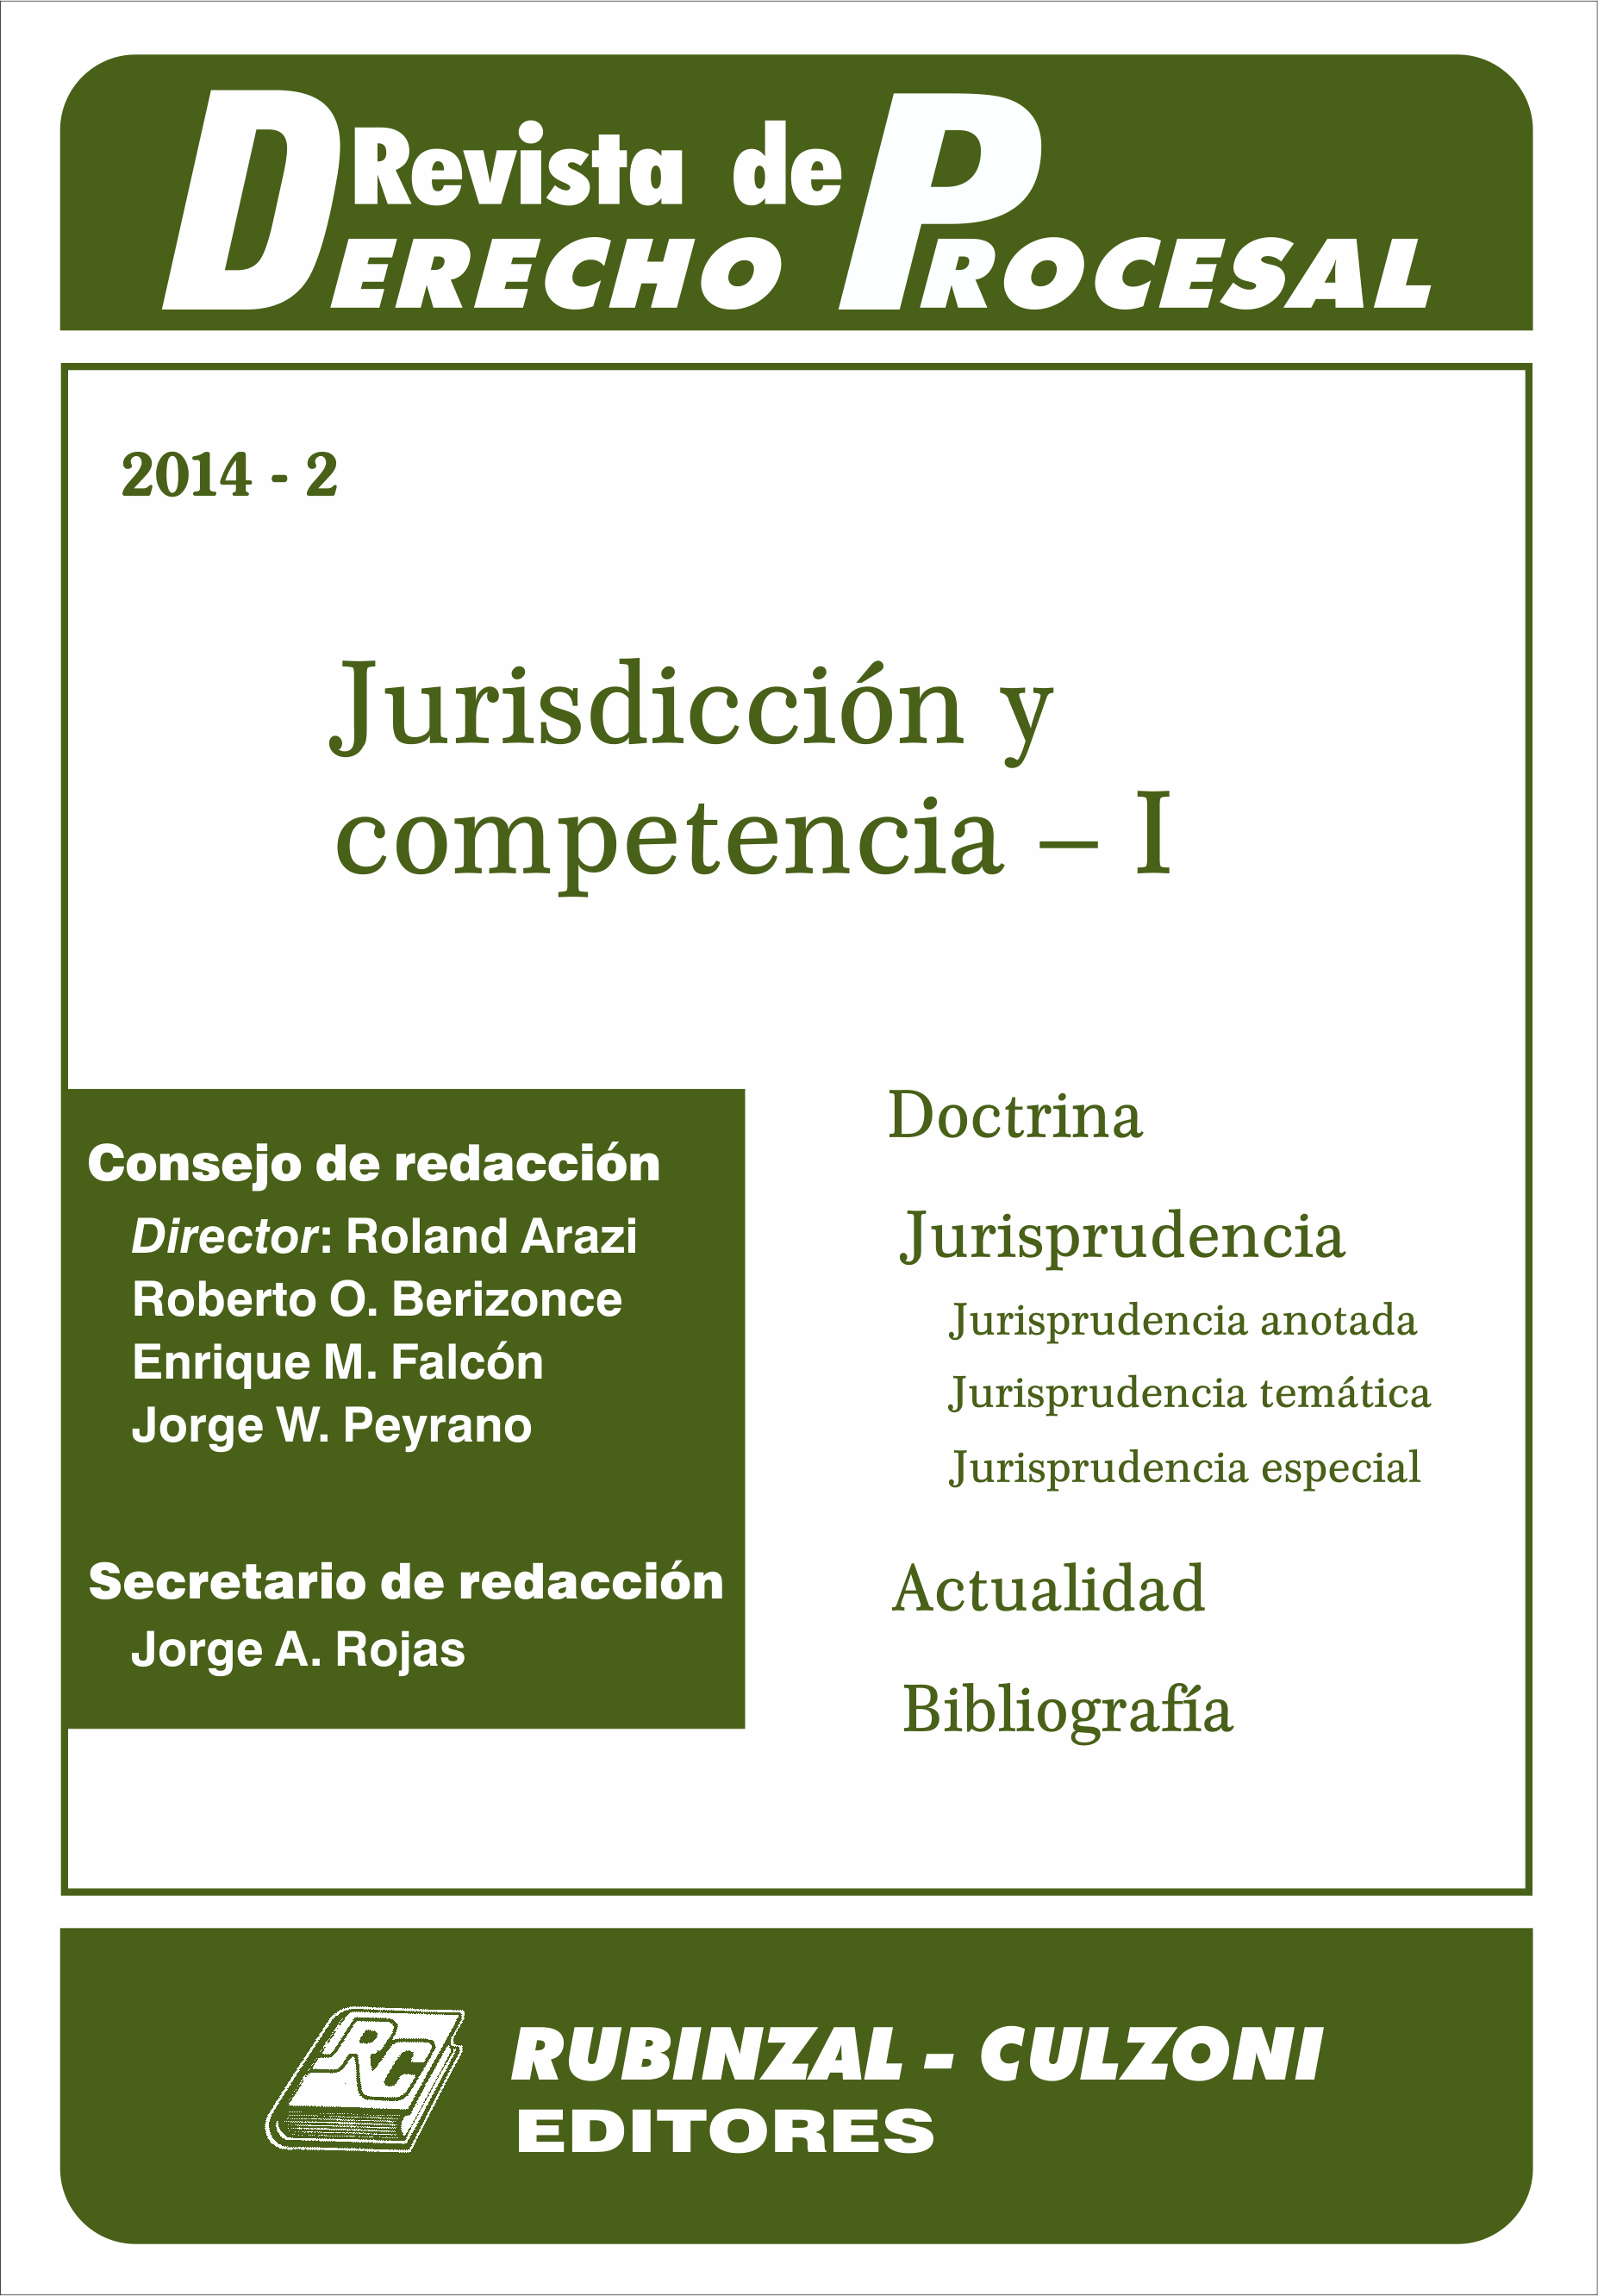 Revista de Derecho Procesal - Jurisdicción y competencia - I